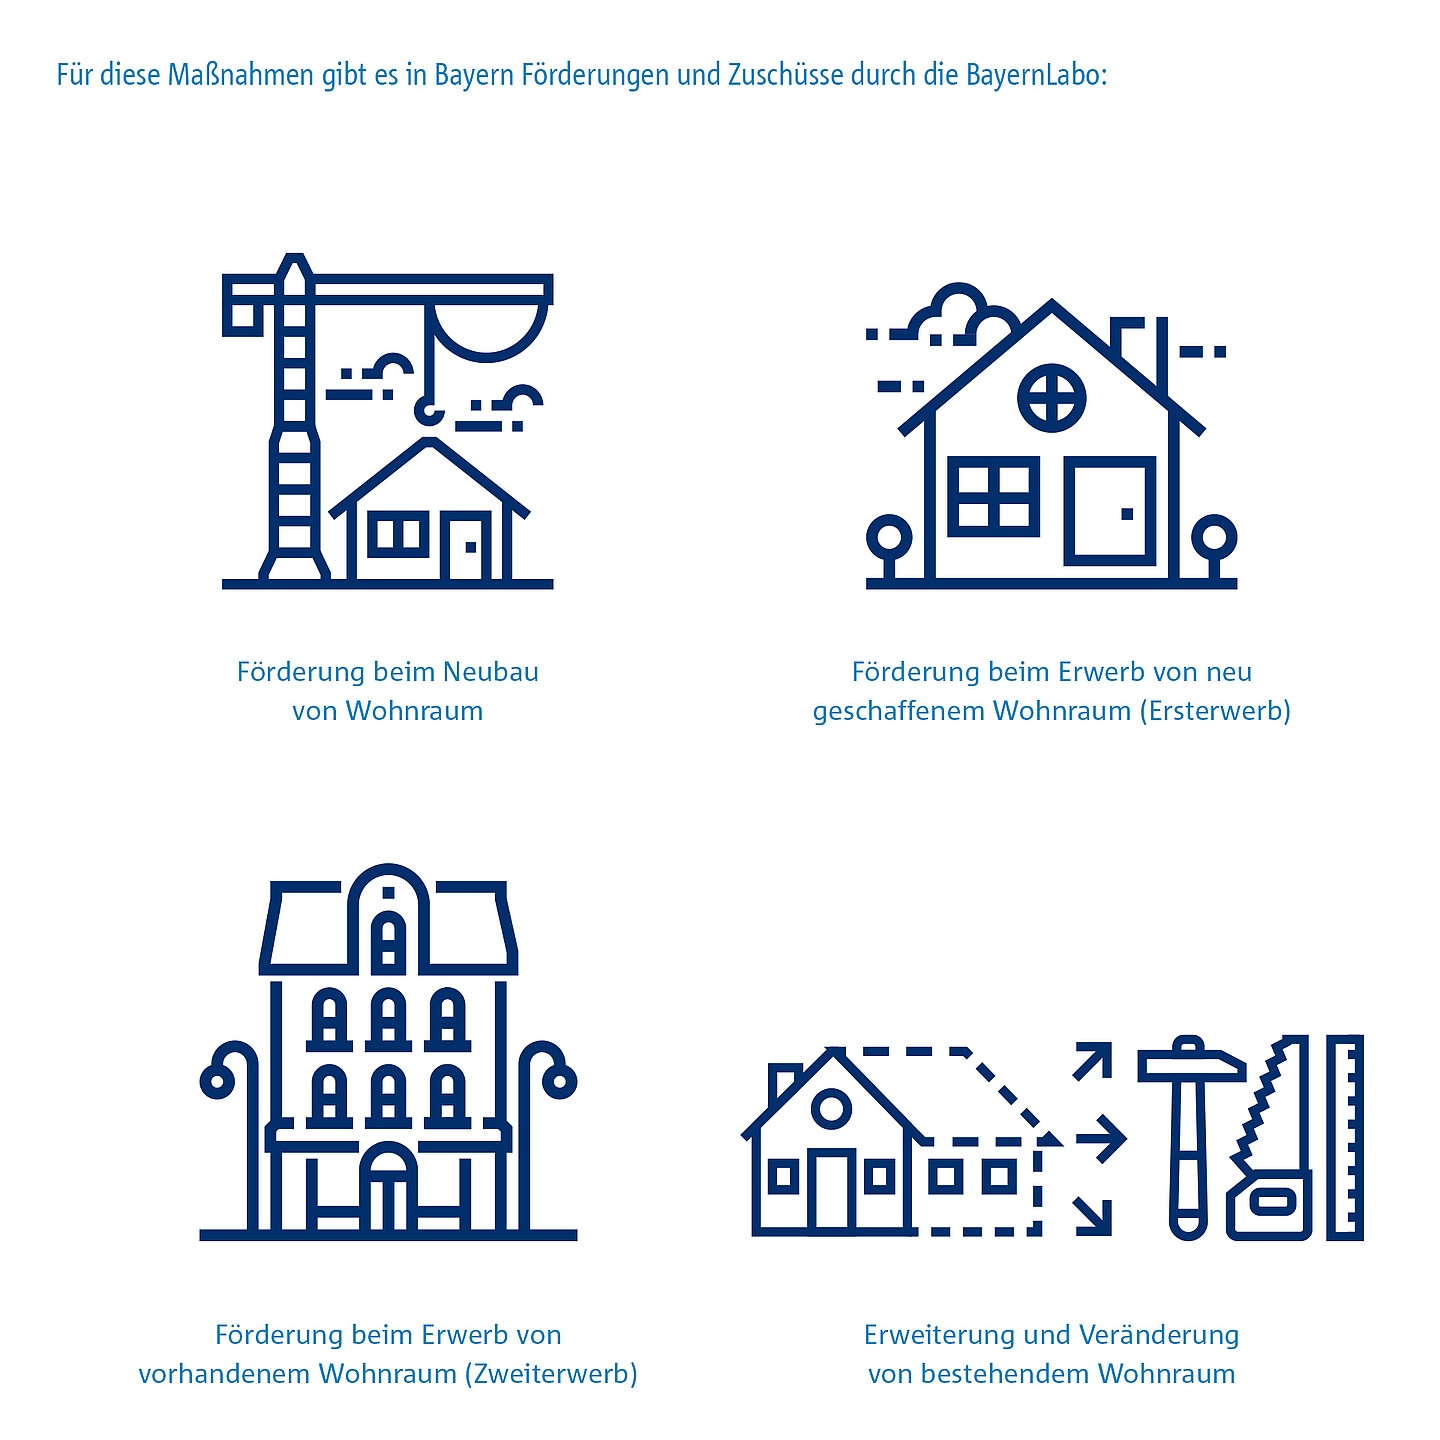 Icons zur Visualisierung der Maßnahmen, die durch die BayernLabo gefördert werden.